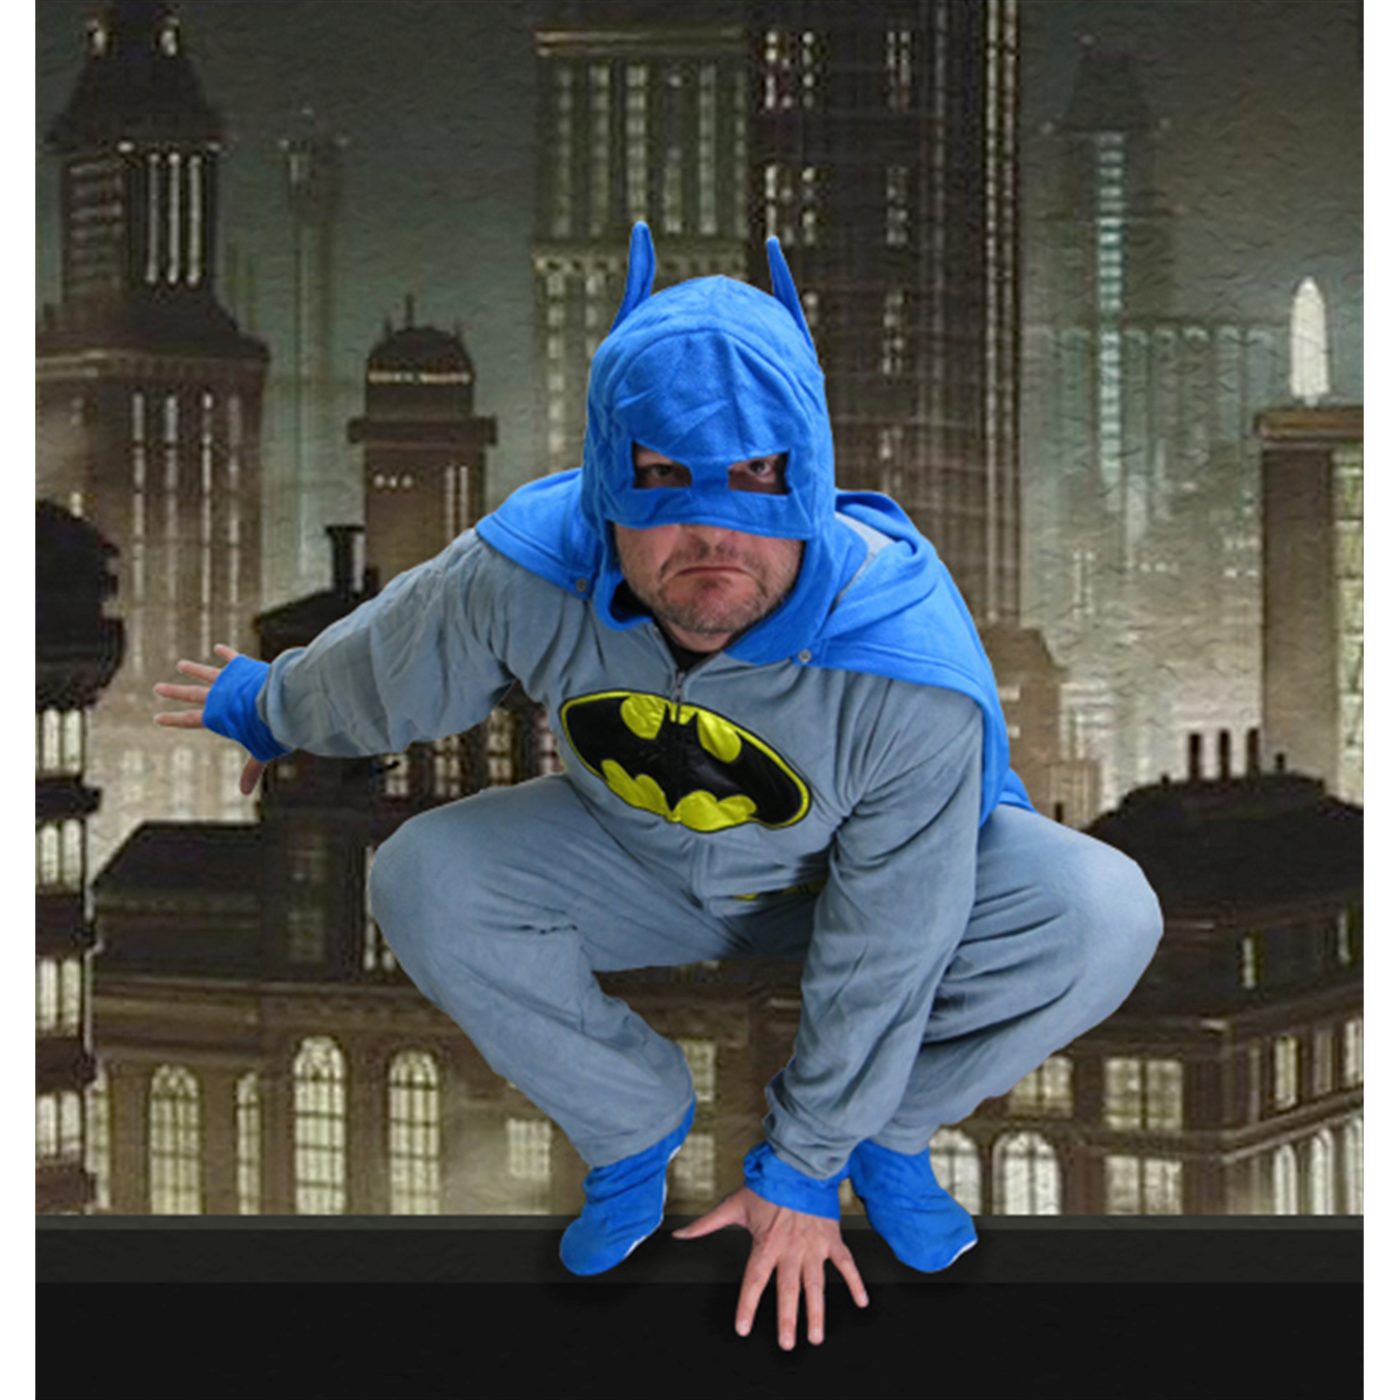 Batman Grey Union Suit Pajamas w/Cape and Cowl